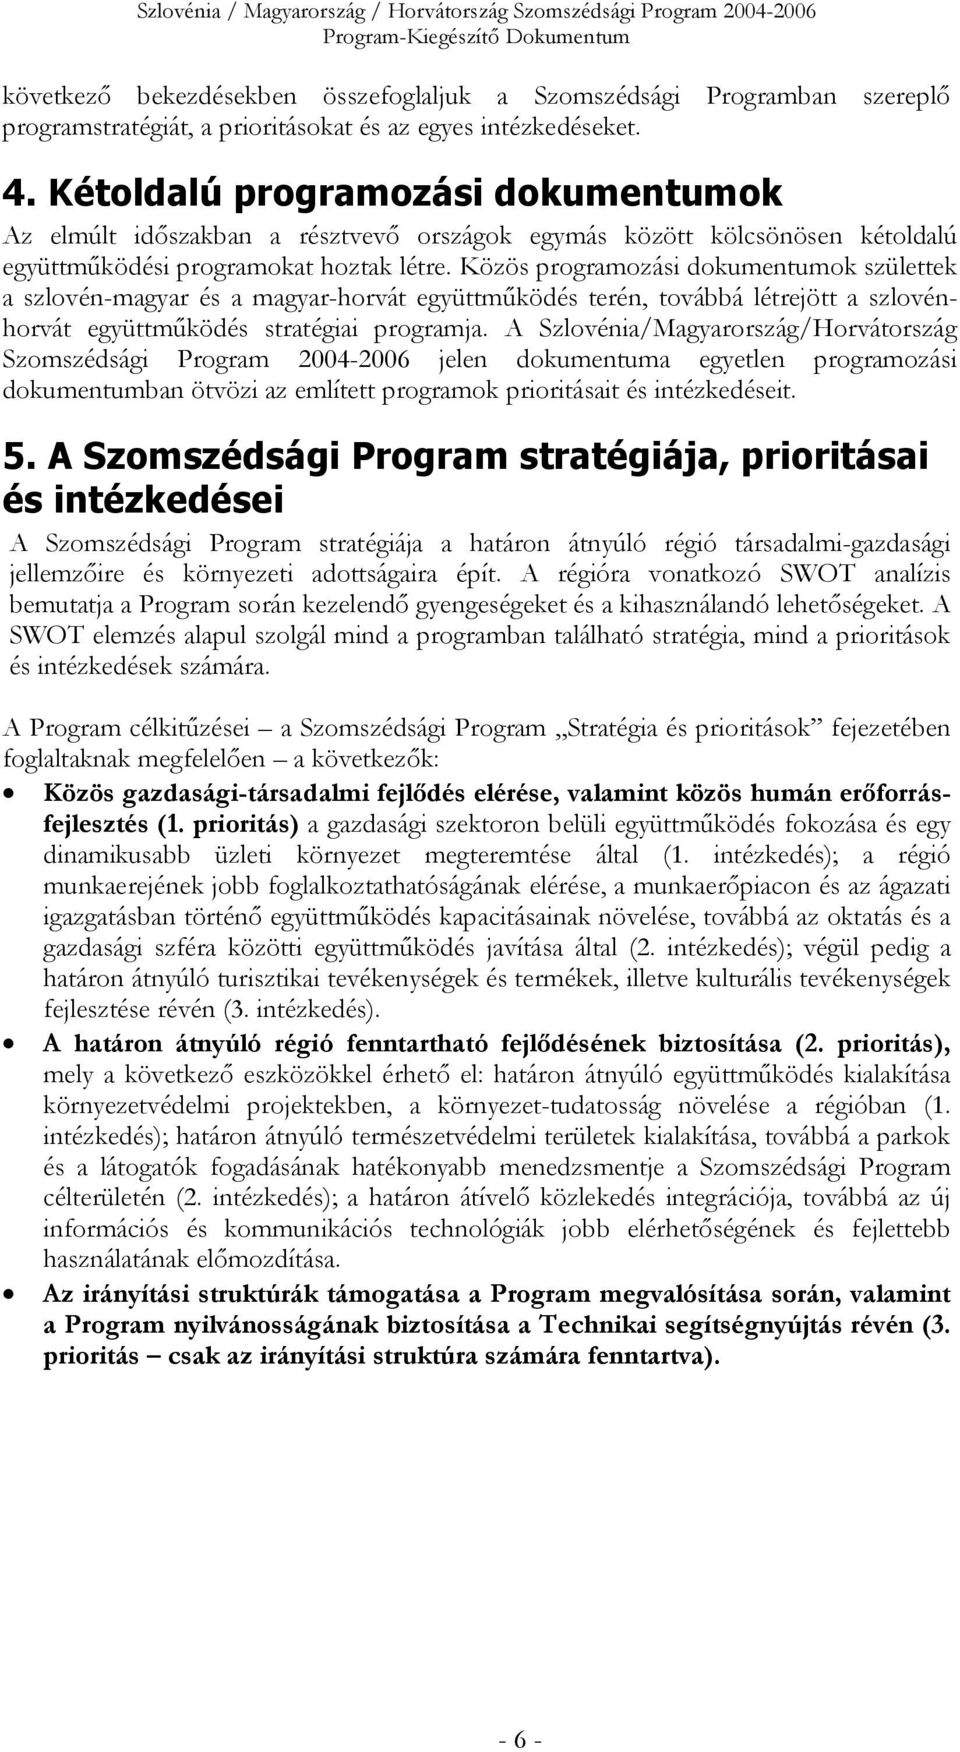 Közös programozási dokumentumok születtek a szlovén-magyar és a magyar-horvát együttműködés terén, továbbá létrejött a szlovénhorvát együttműködés stratégiai programja.